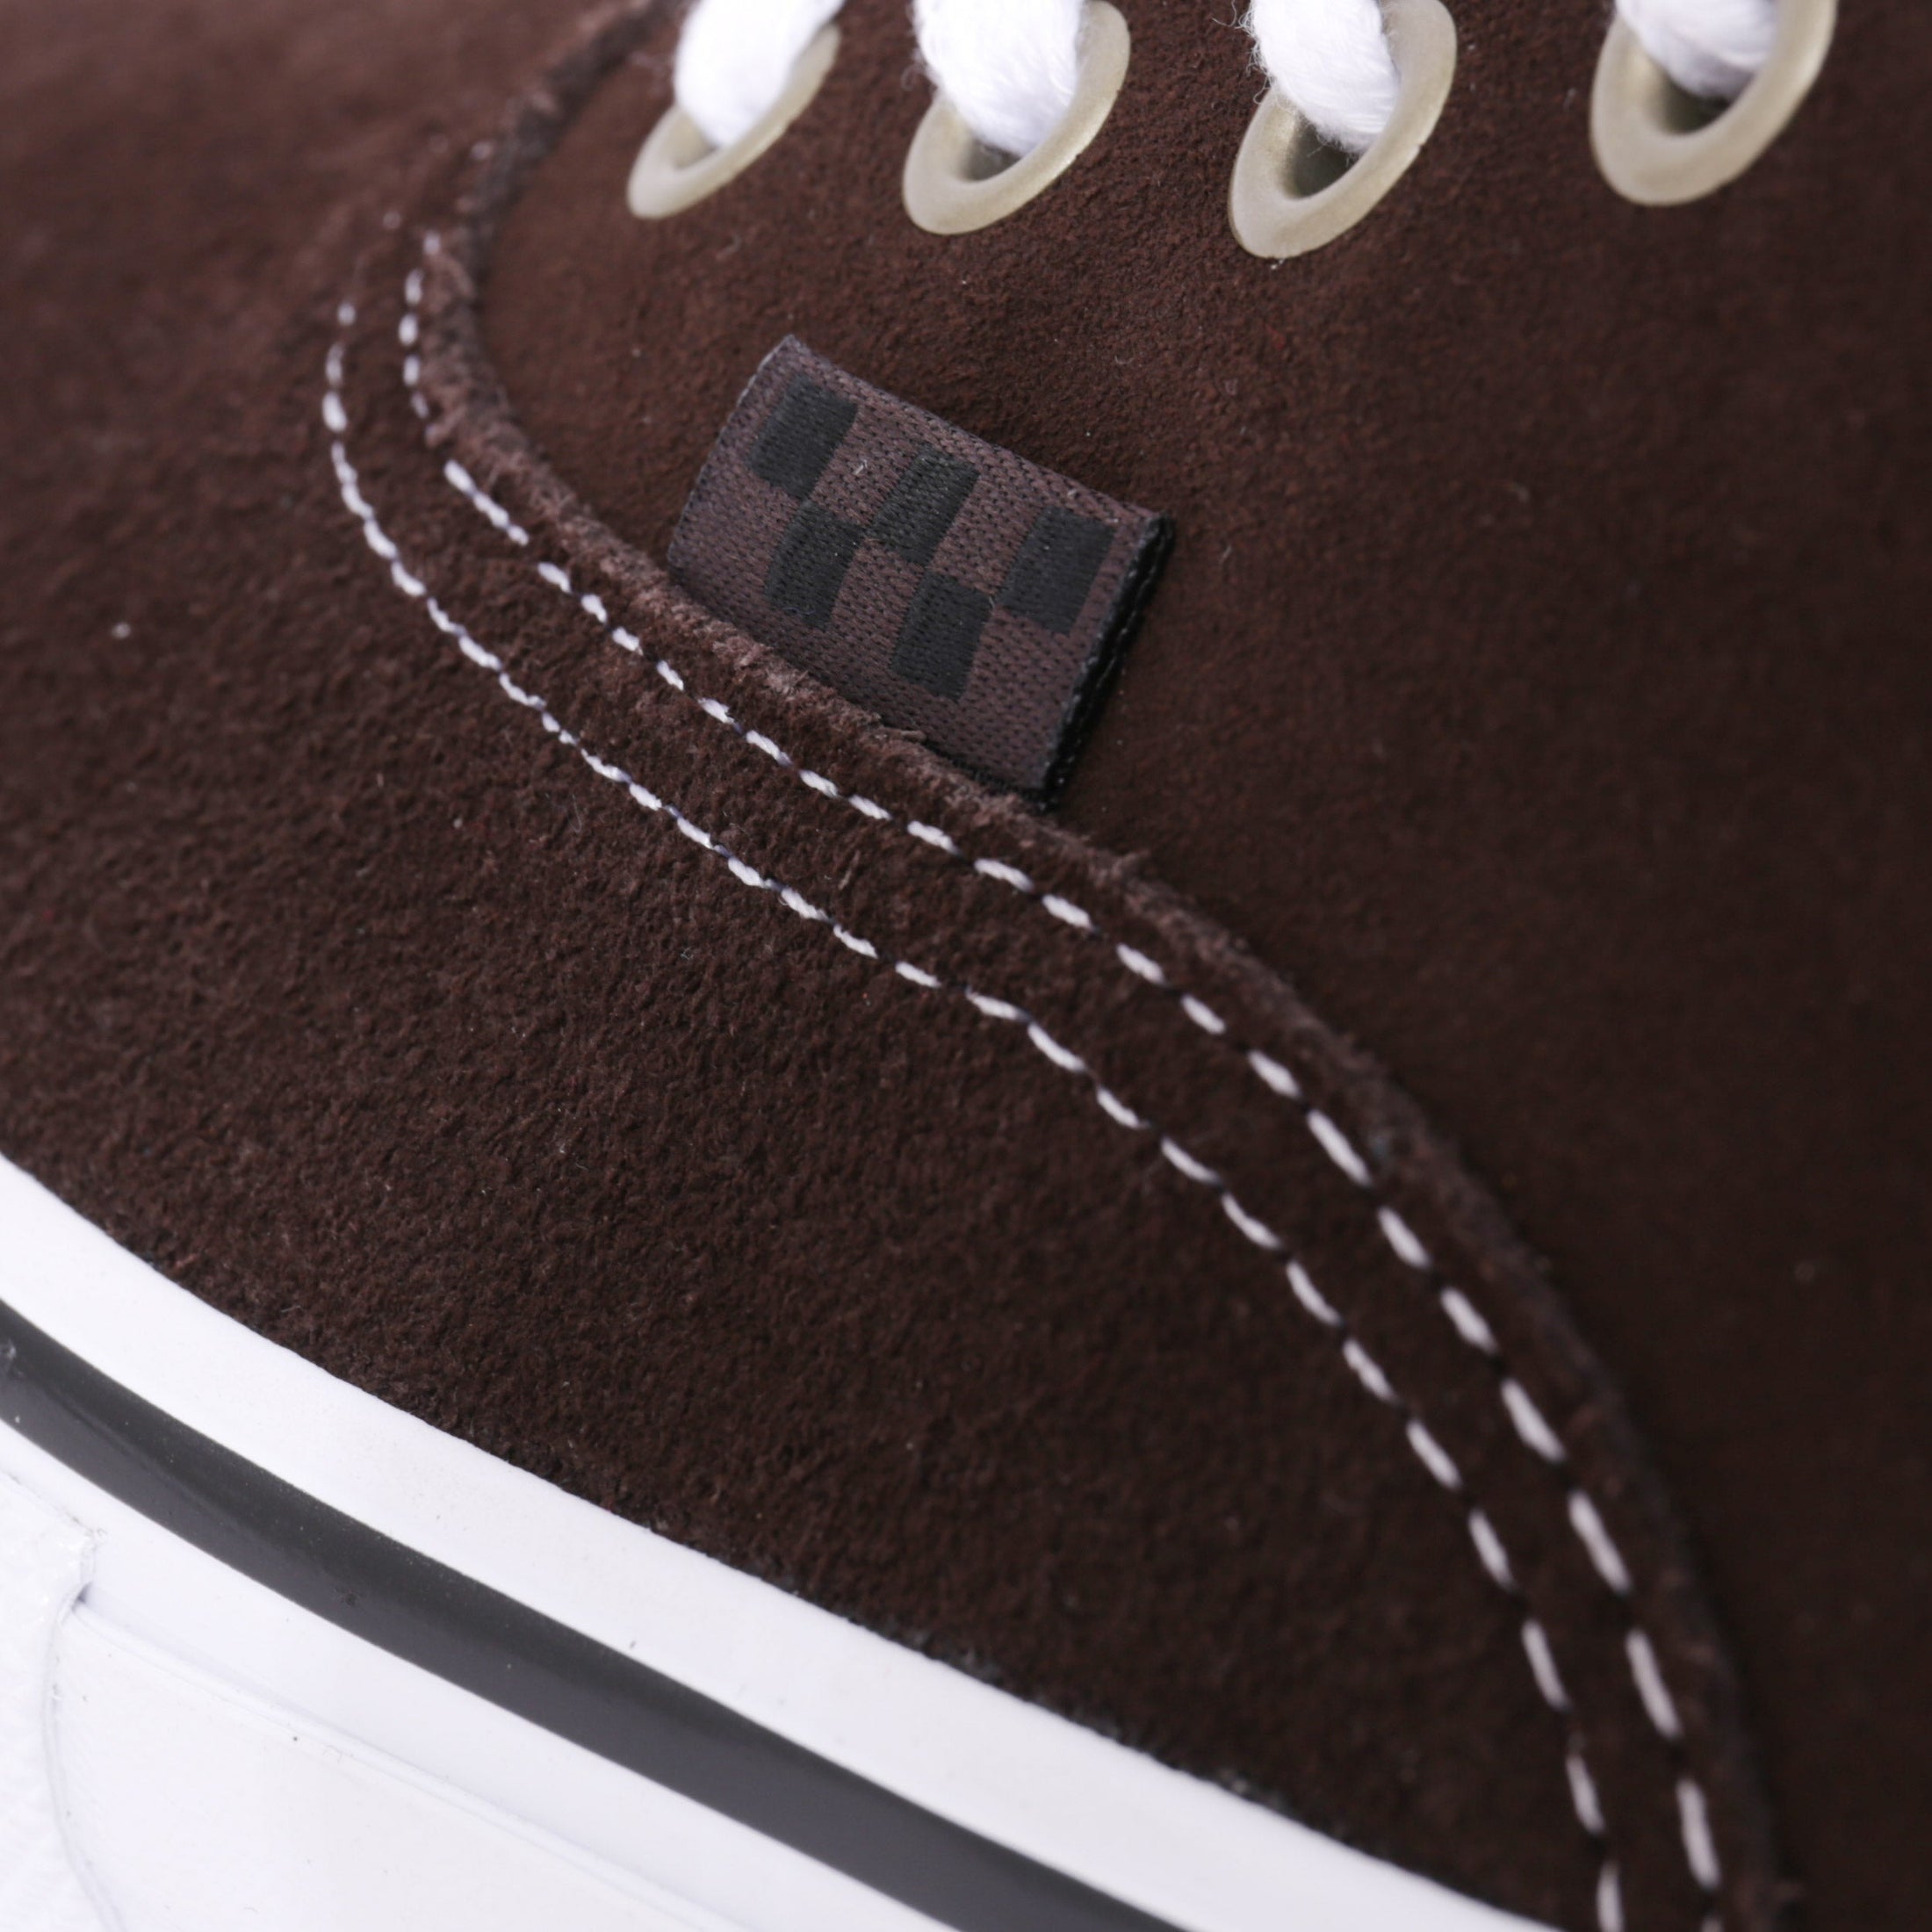 Vans Authentic Mid VCU Skate Shoes Dark Brown